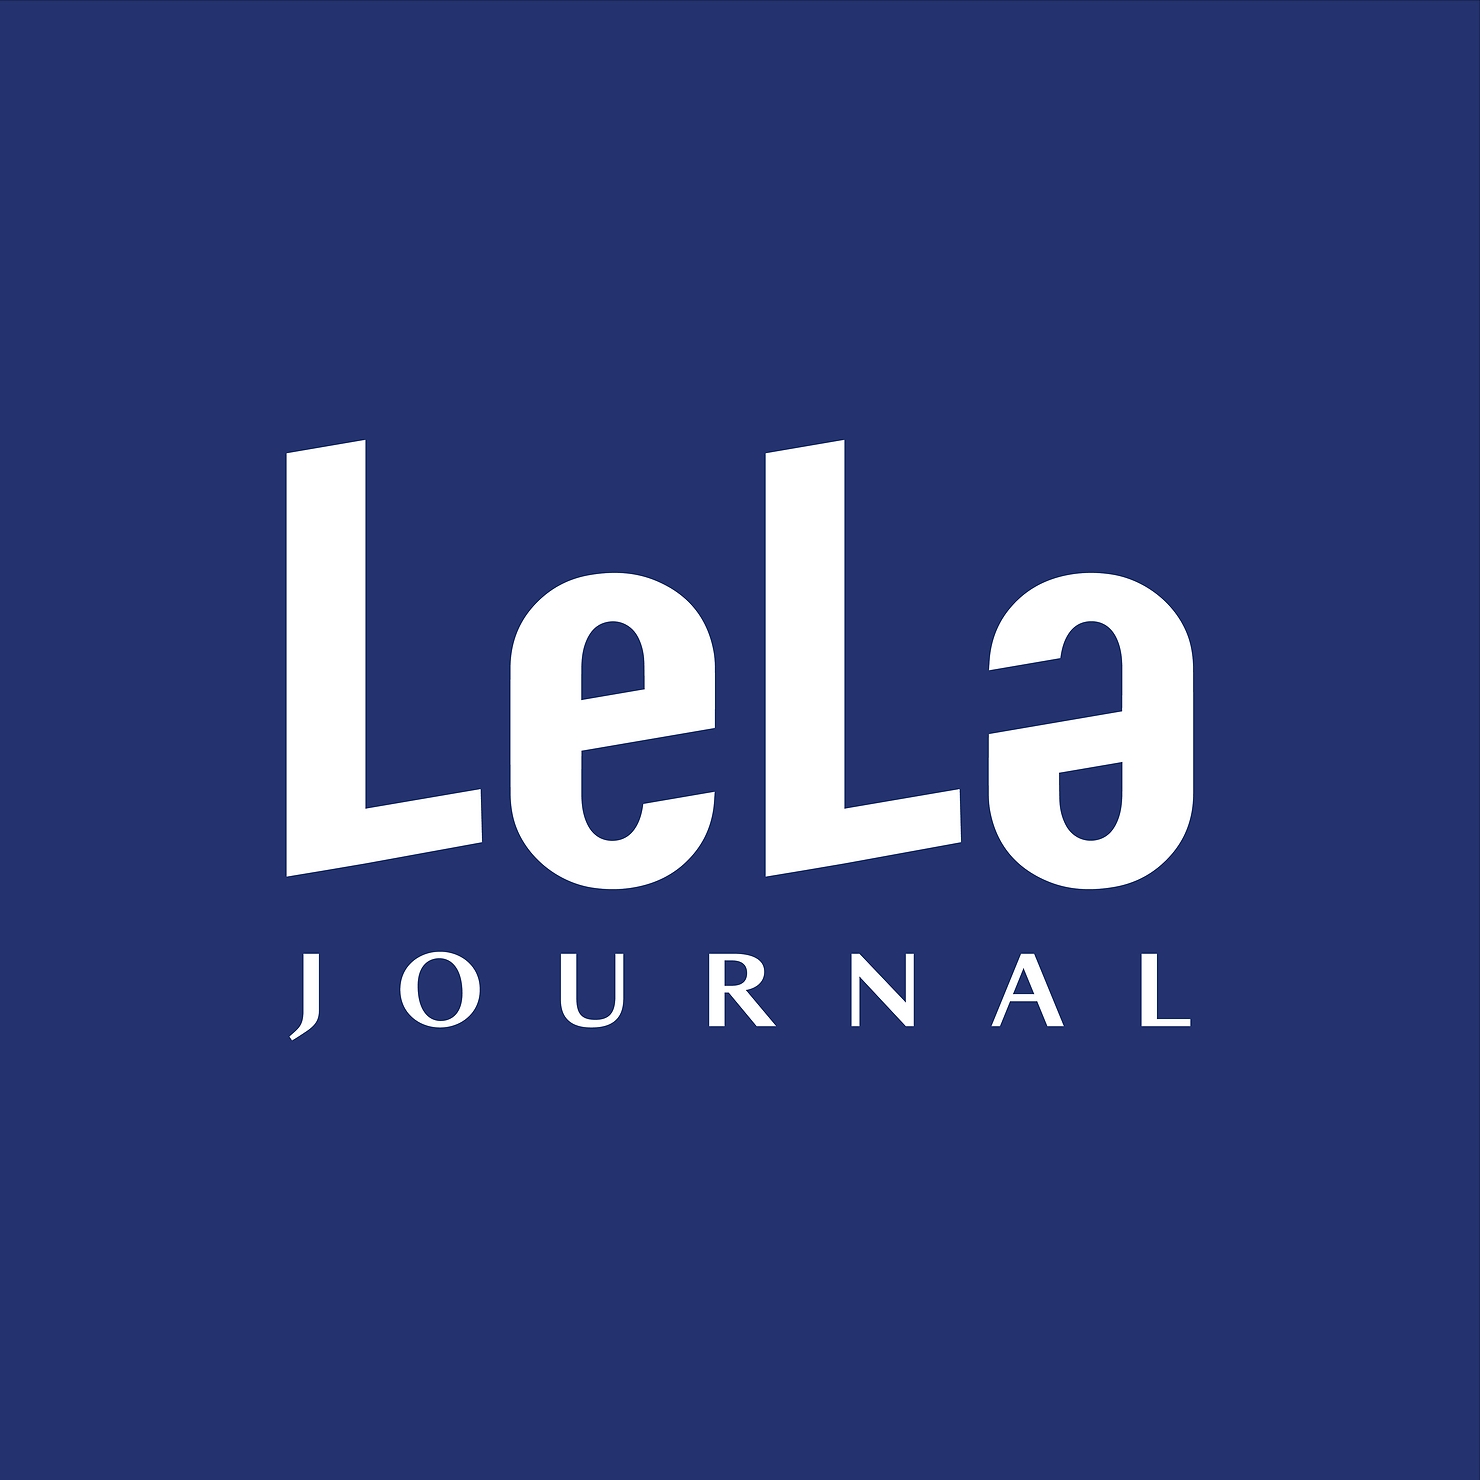 Nhìn lại 1 năm lan tỏa nội dung tích cực và truyền cảm hứng của LeLa Journal